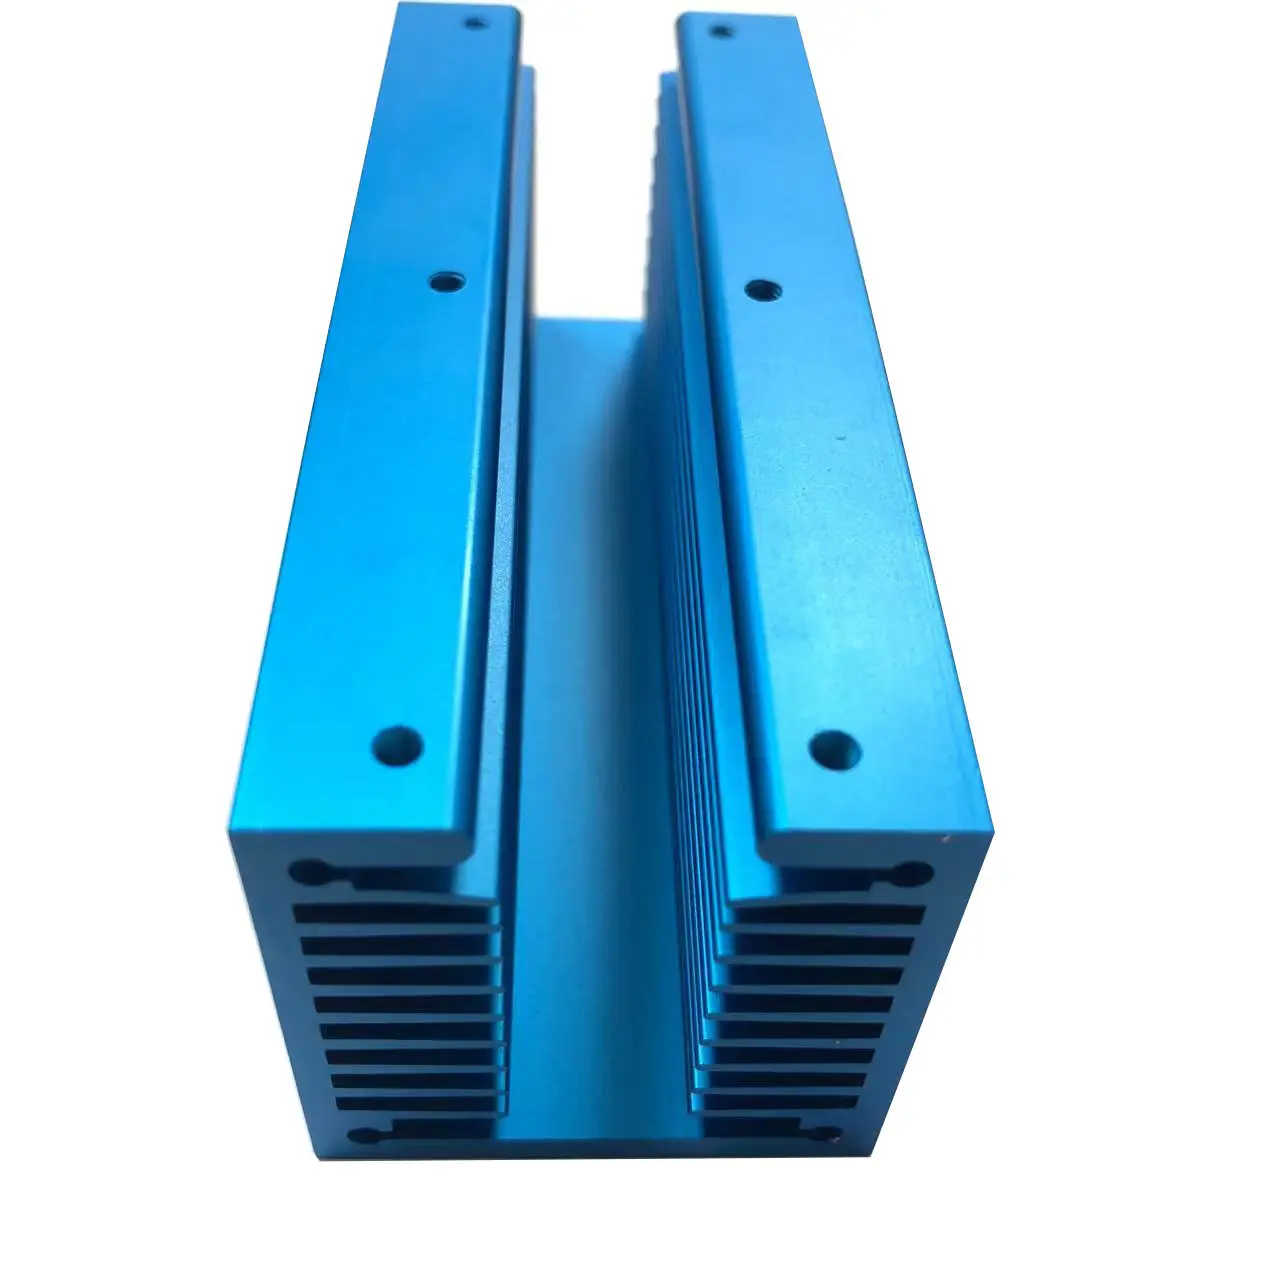 Fabricante de aletas de refrigeración de perfiles de disipador de calor de extrusión de aluminio Al6063 T5 industrial, disipador de calor con aletas de aluminio OEM